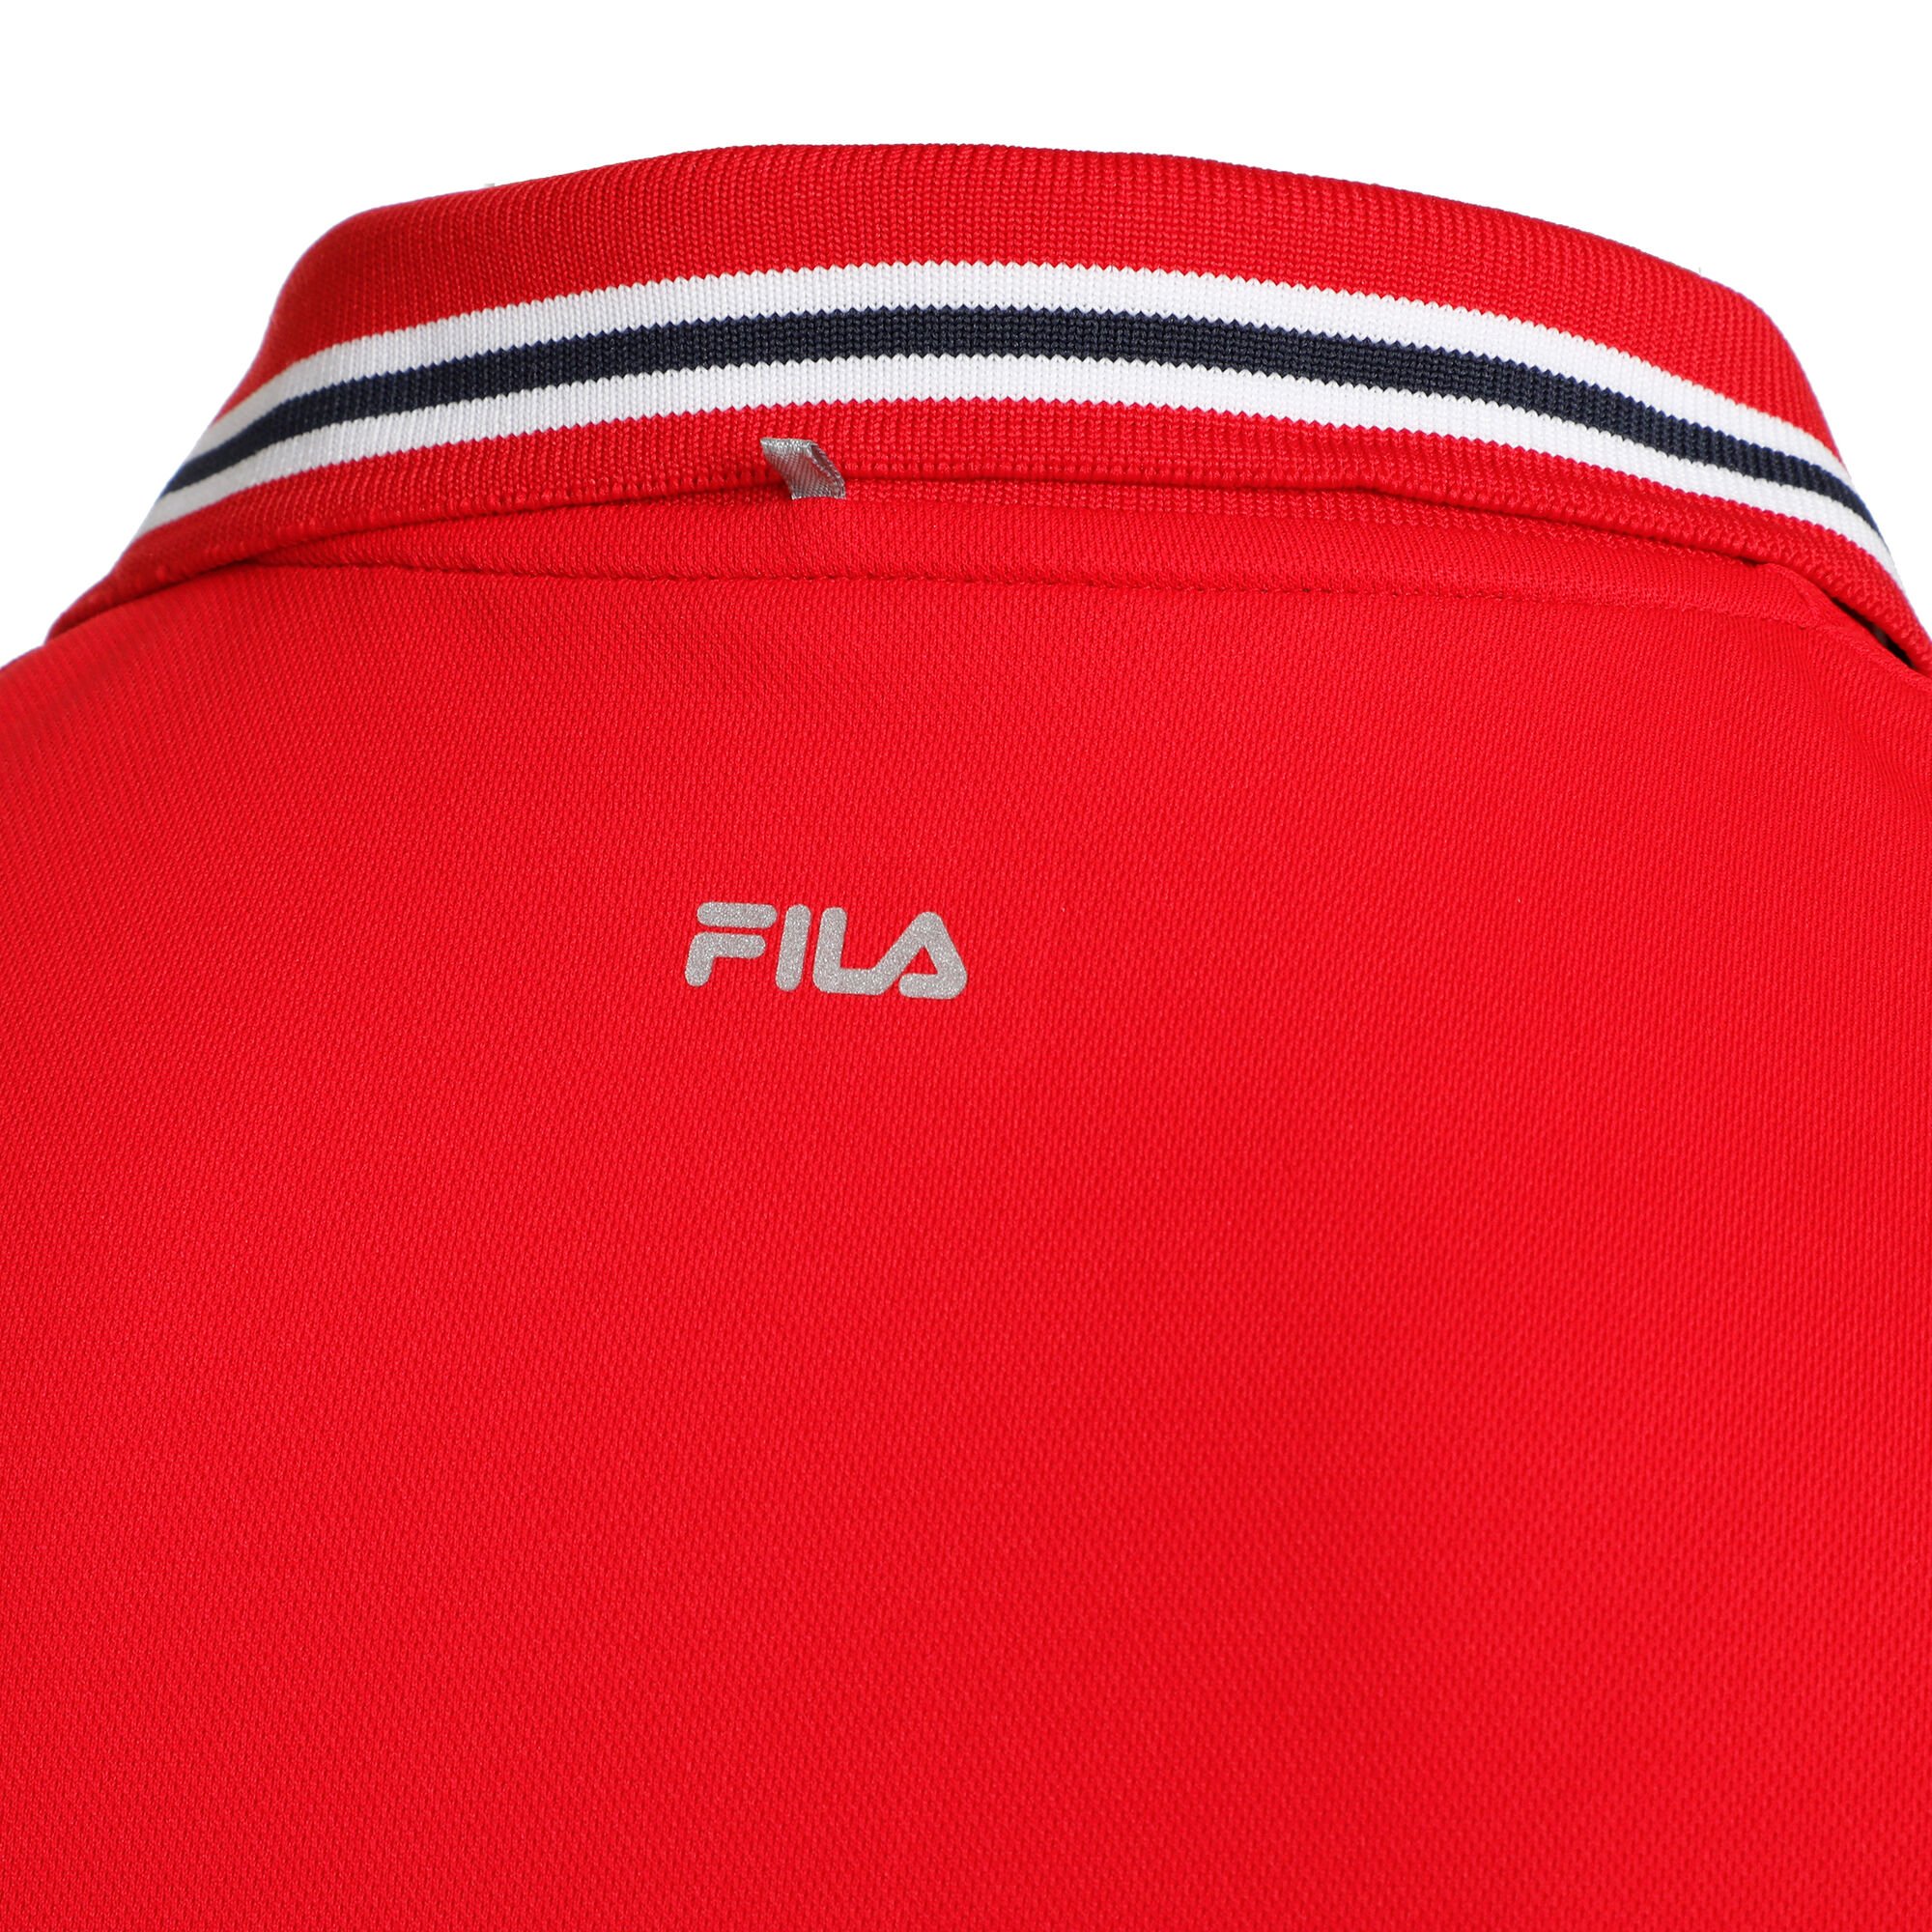 Door jongen leren buy Fila Piro Polo Men - Red, White online | Tennis-Point